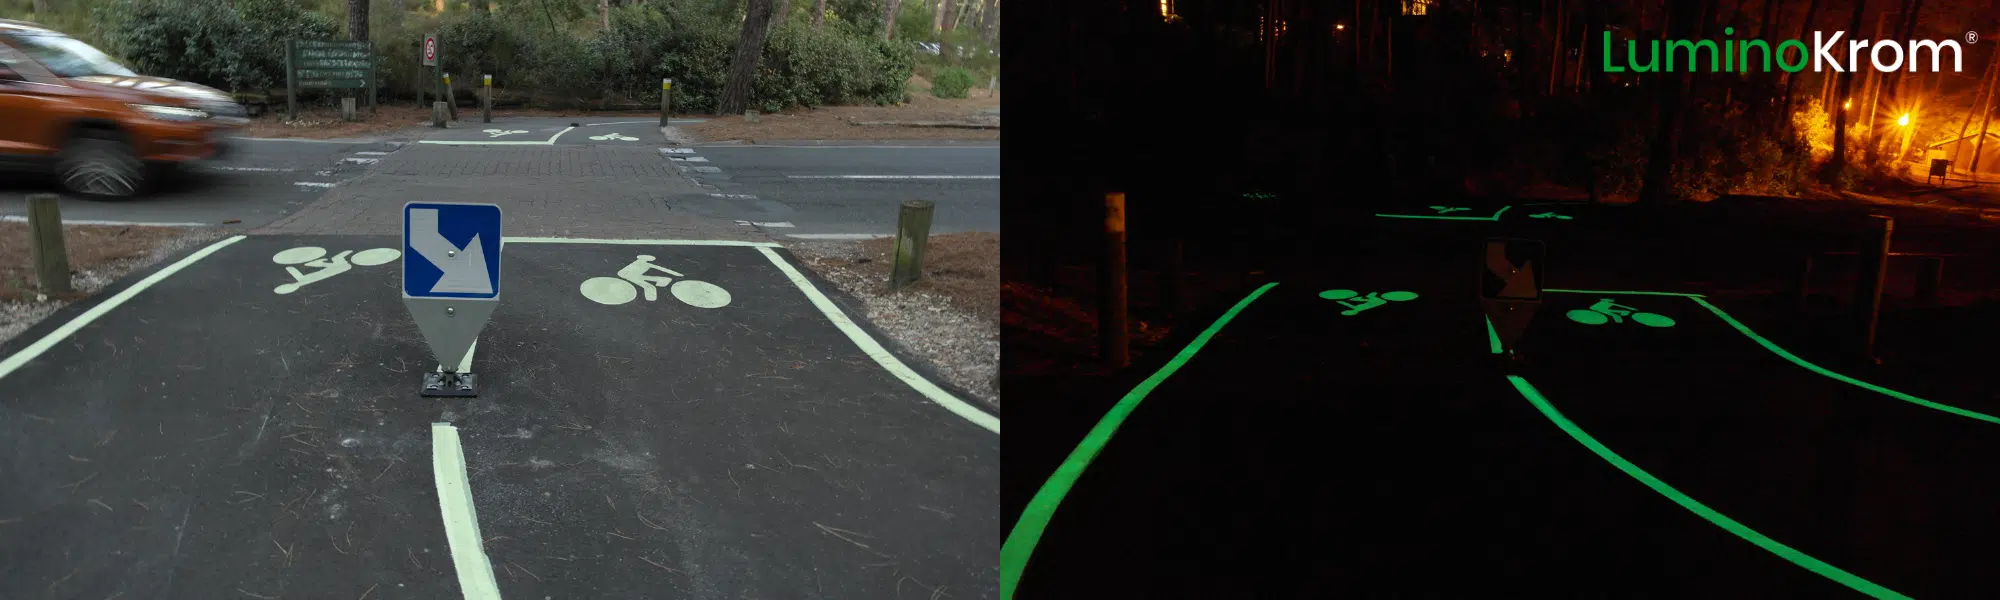 Signalétique lumineuse de nuit pour sécurité des pistes cyclables